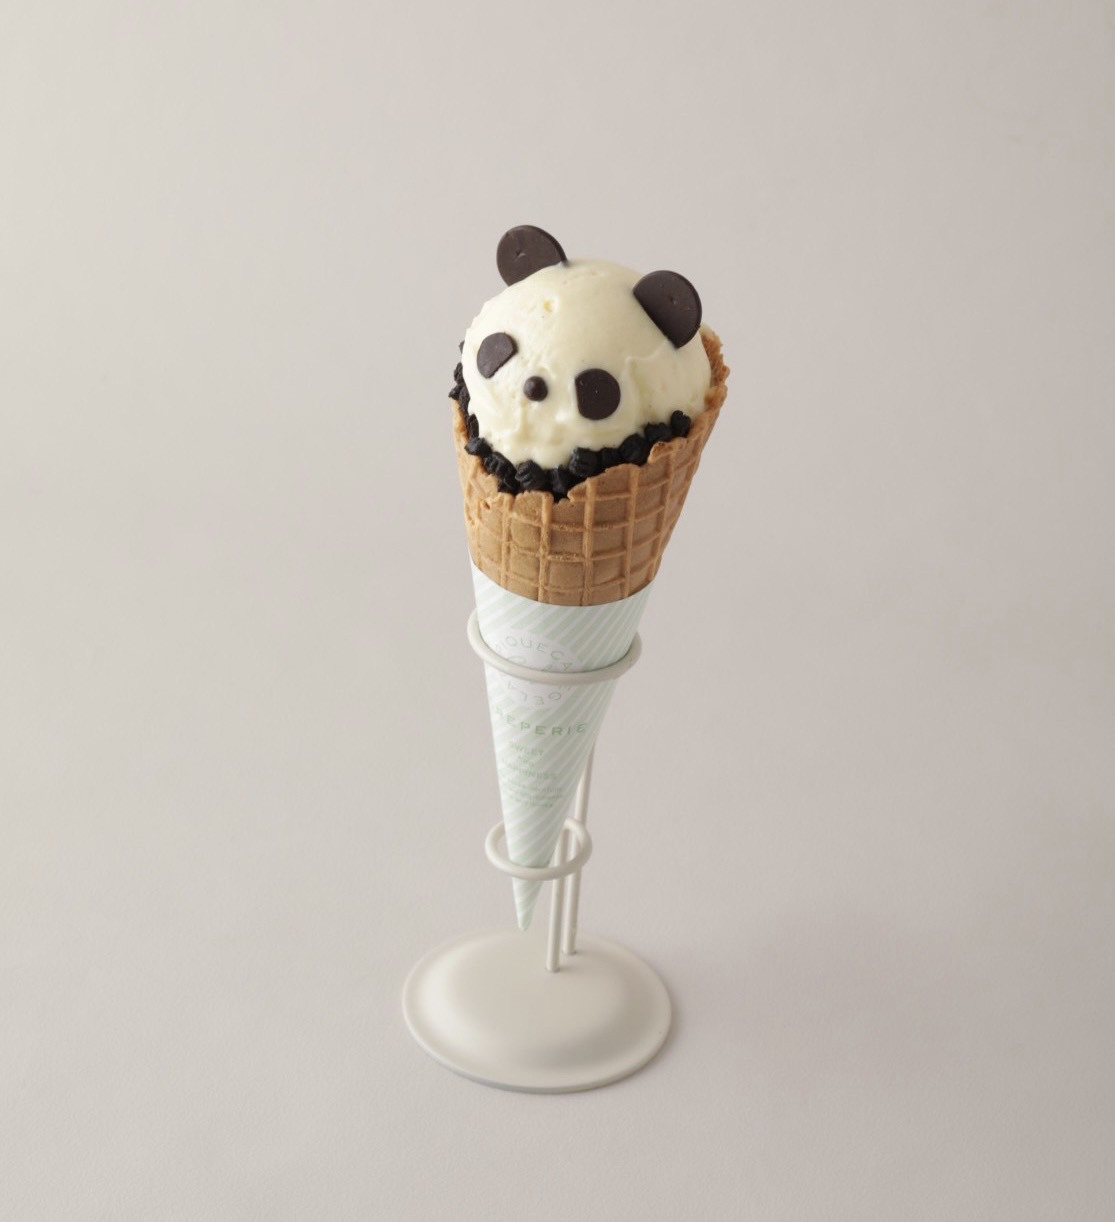 gelato pique café熊貓系甜點可愛登場